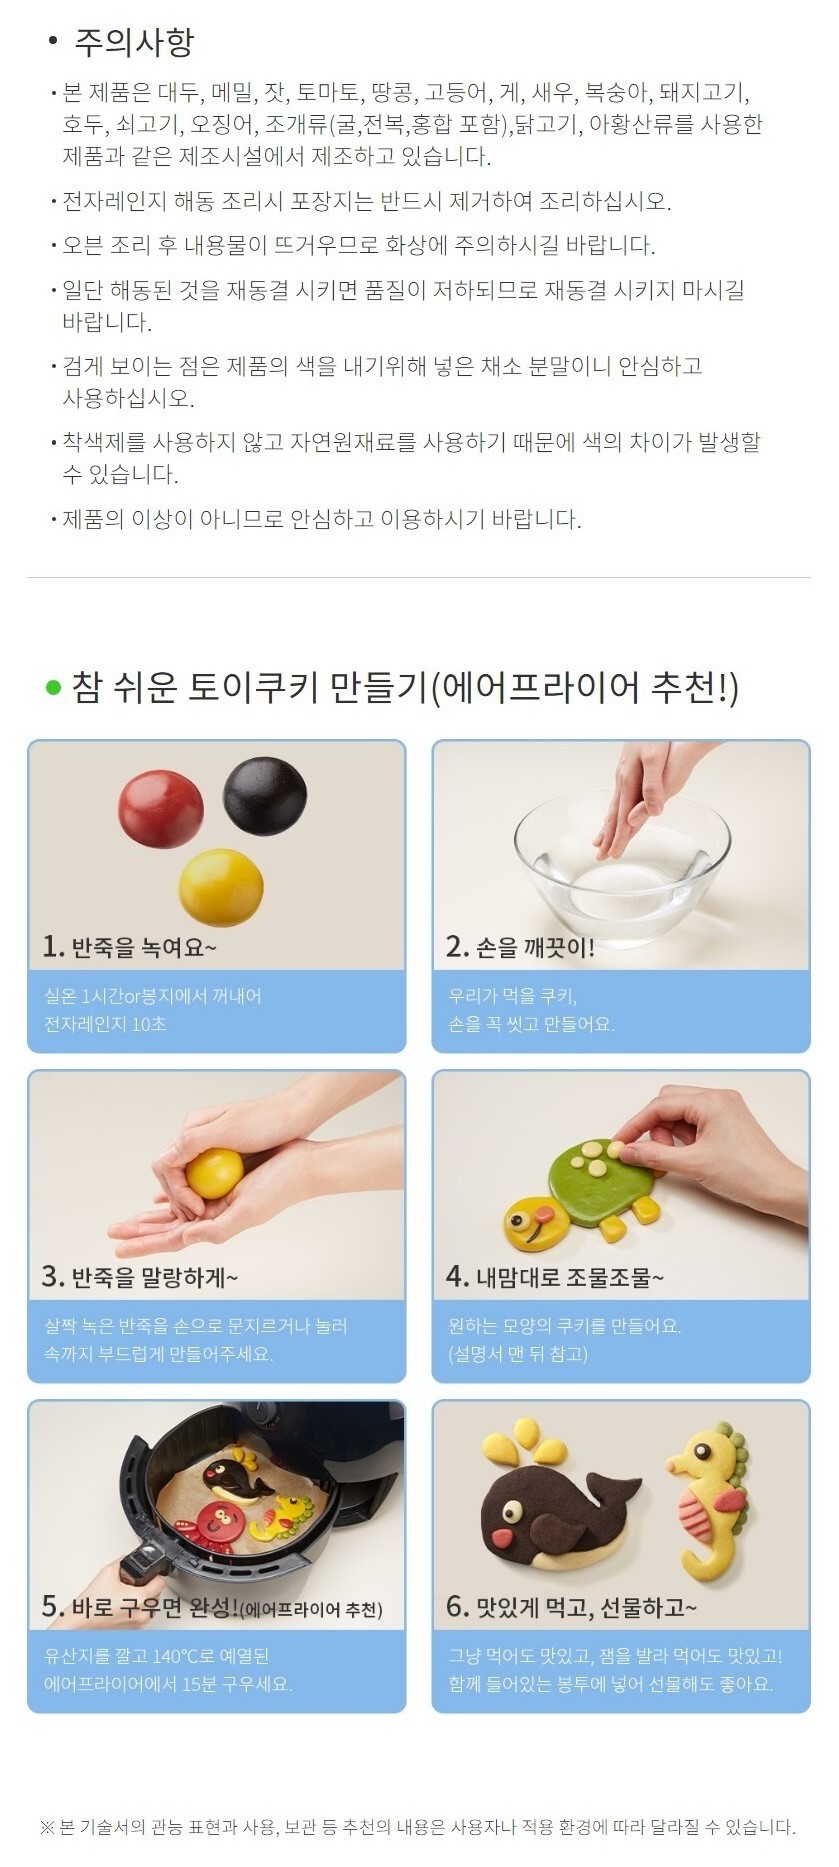 韓國食品-[풀무원] 토이쿠키 만들기 (신비한 바닷속 이야기) 300g